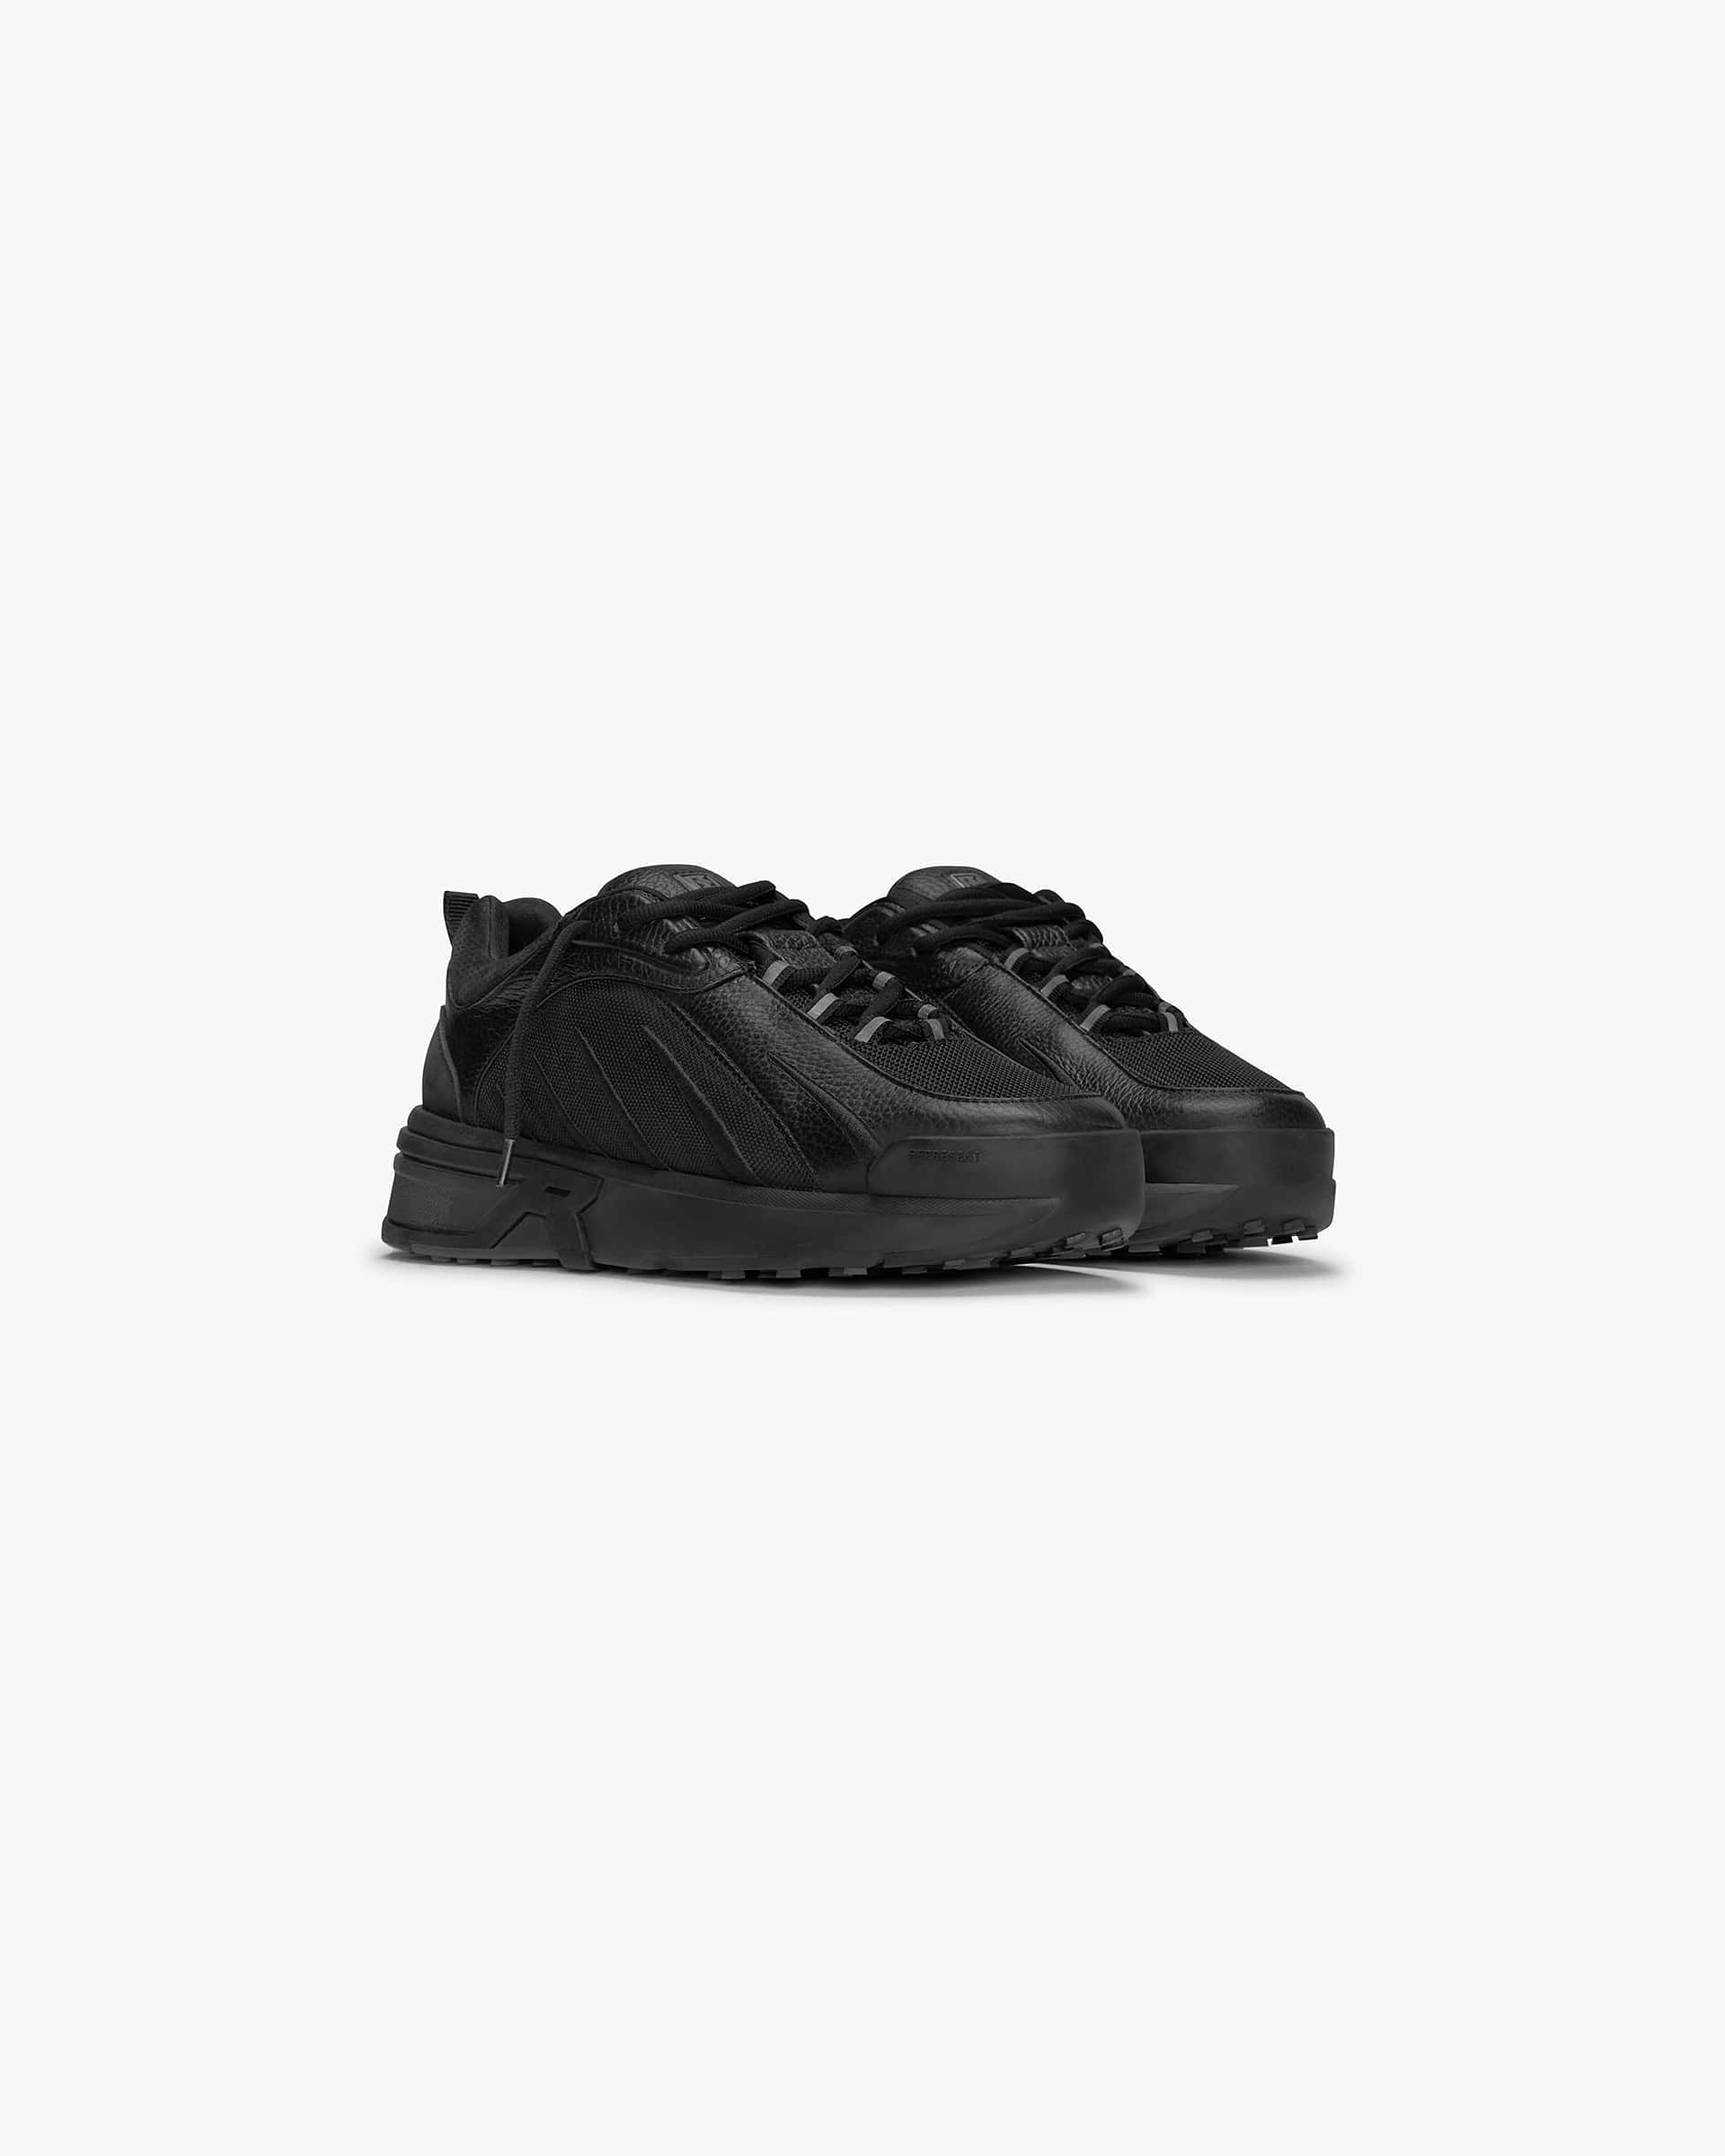 Viper | Triple Black Footwear FW22 | Represent Clo